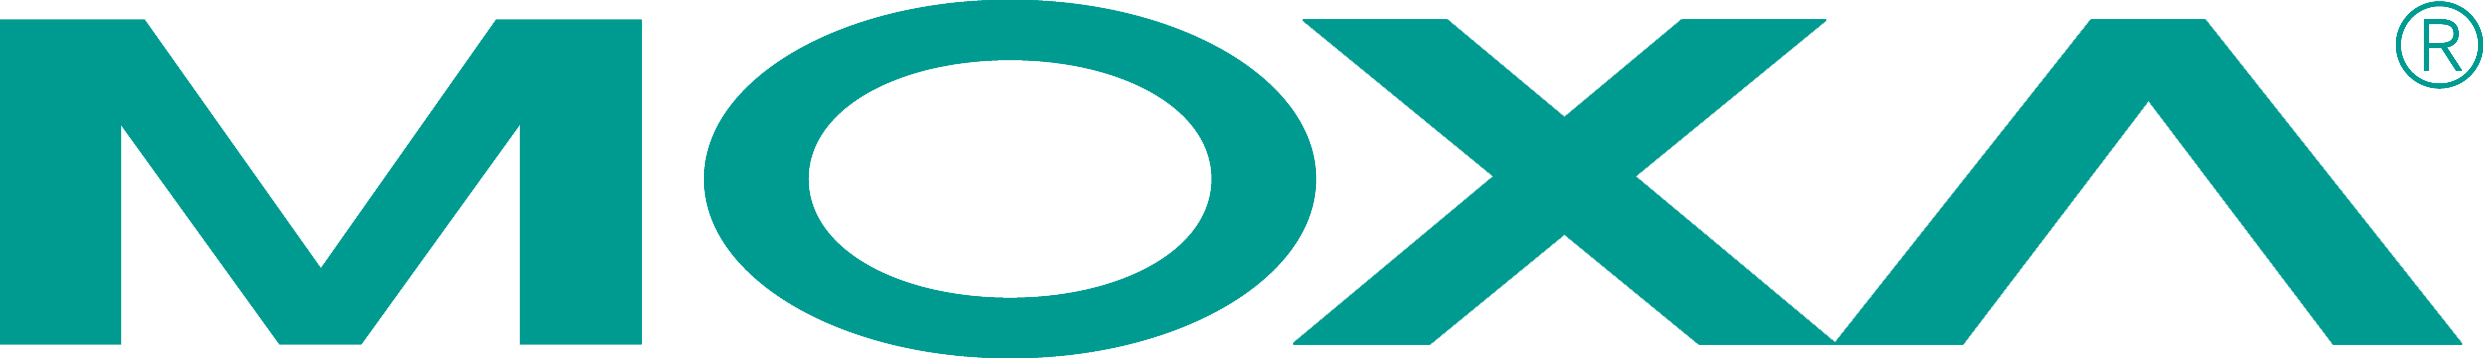 Moxa_Logo